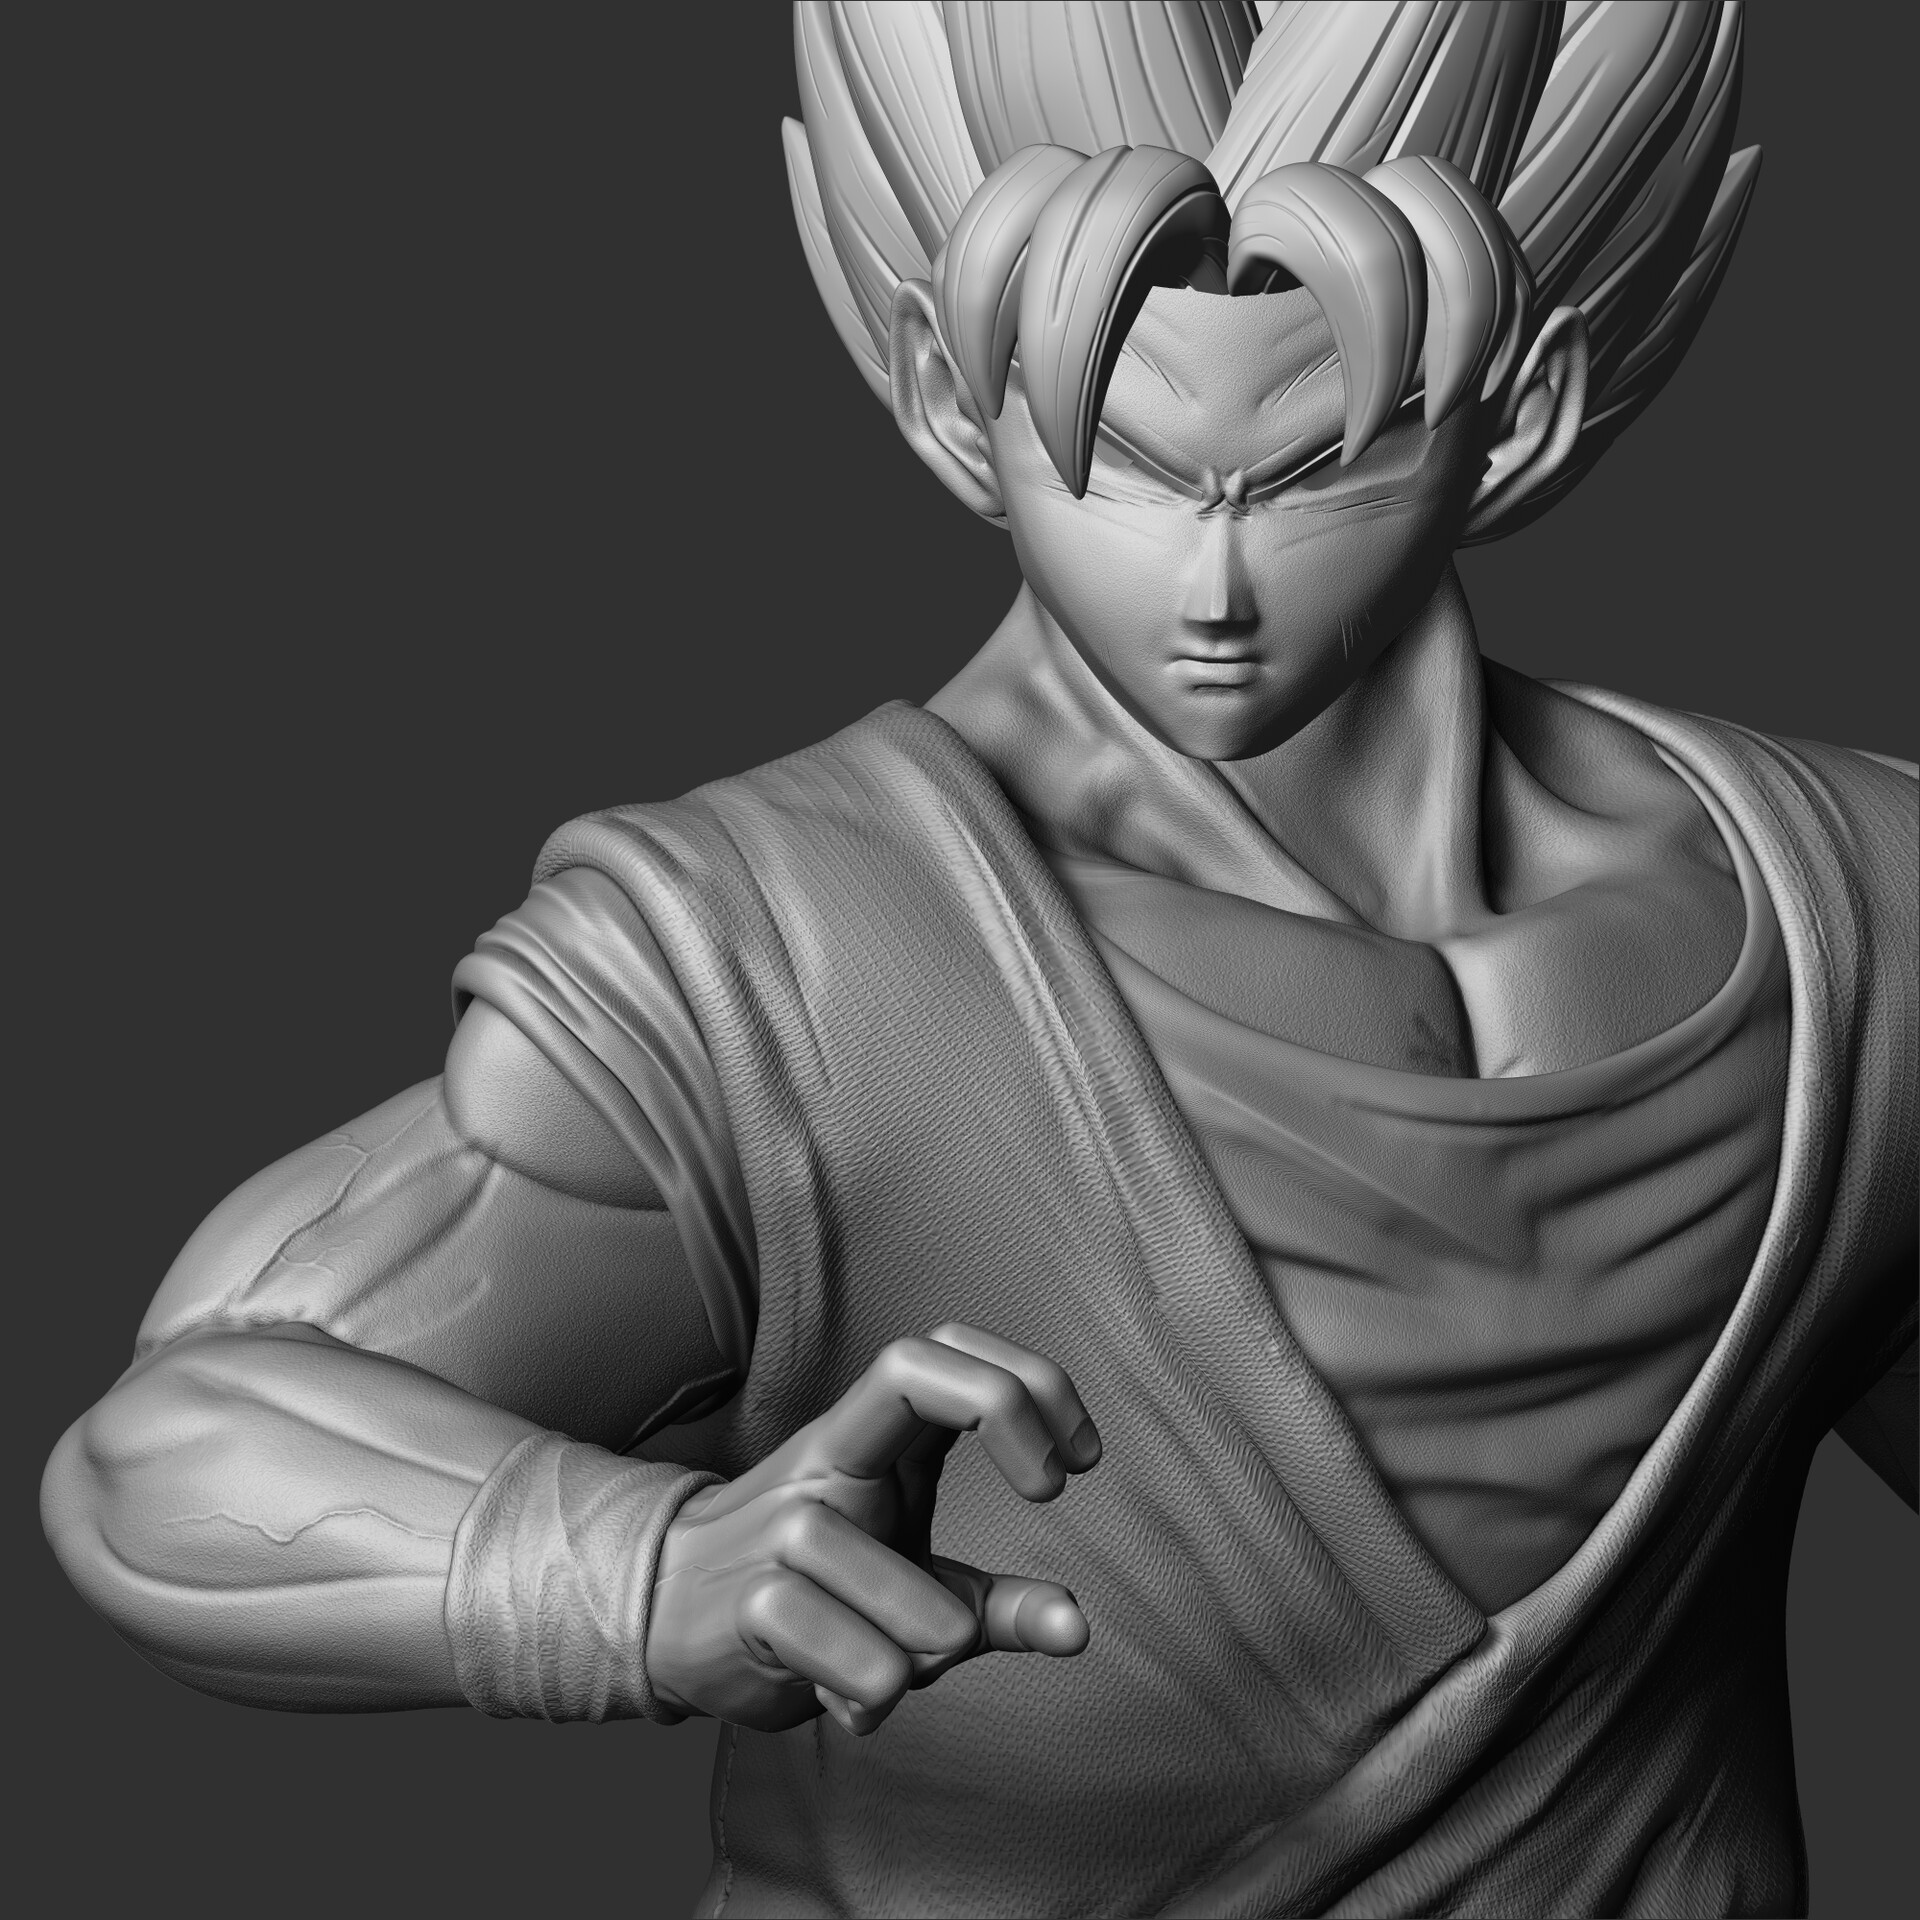 ArtStation - Dragon Ball - Goku Fan Art Figure